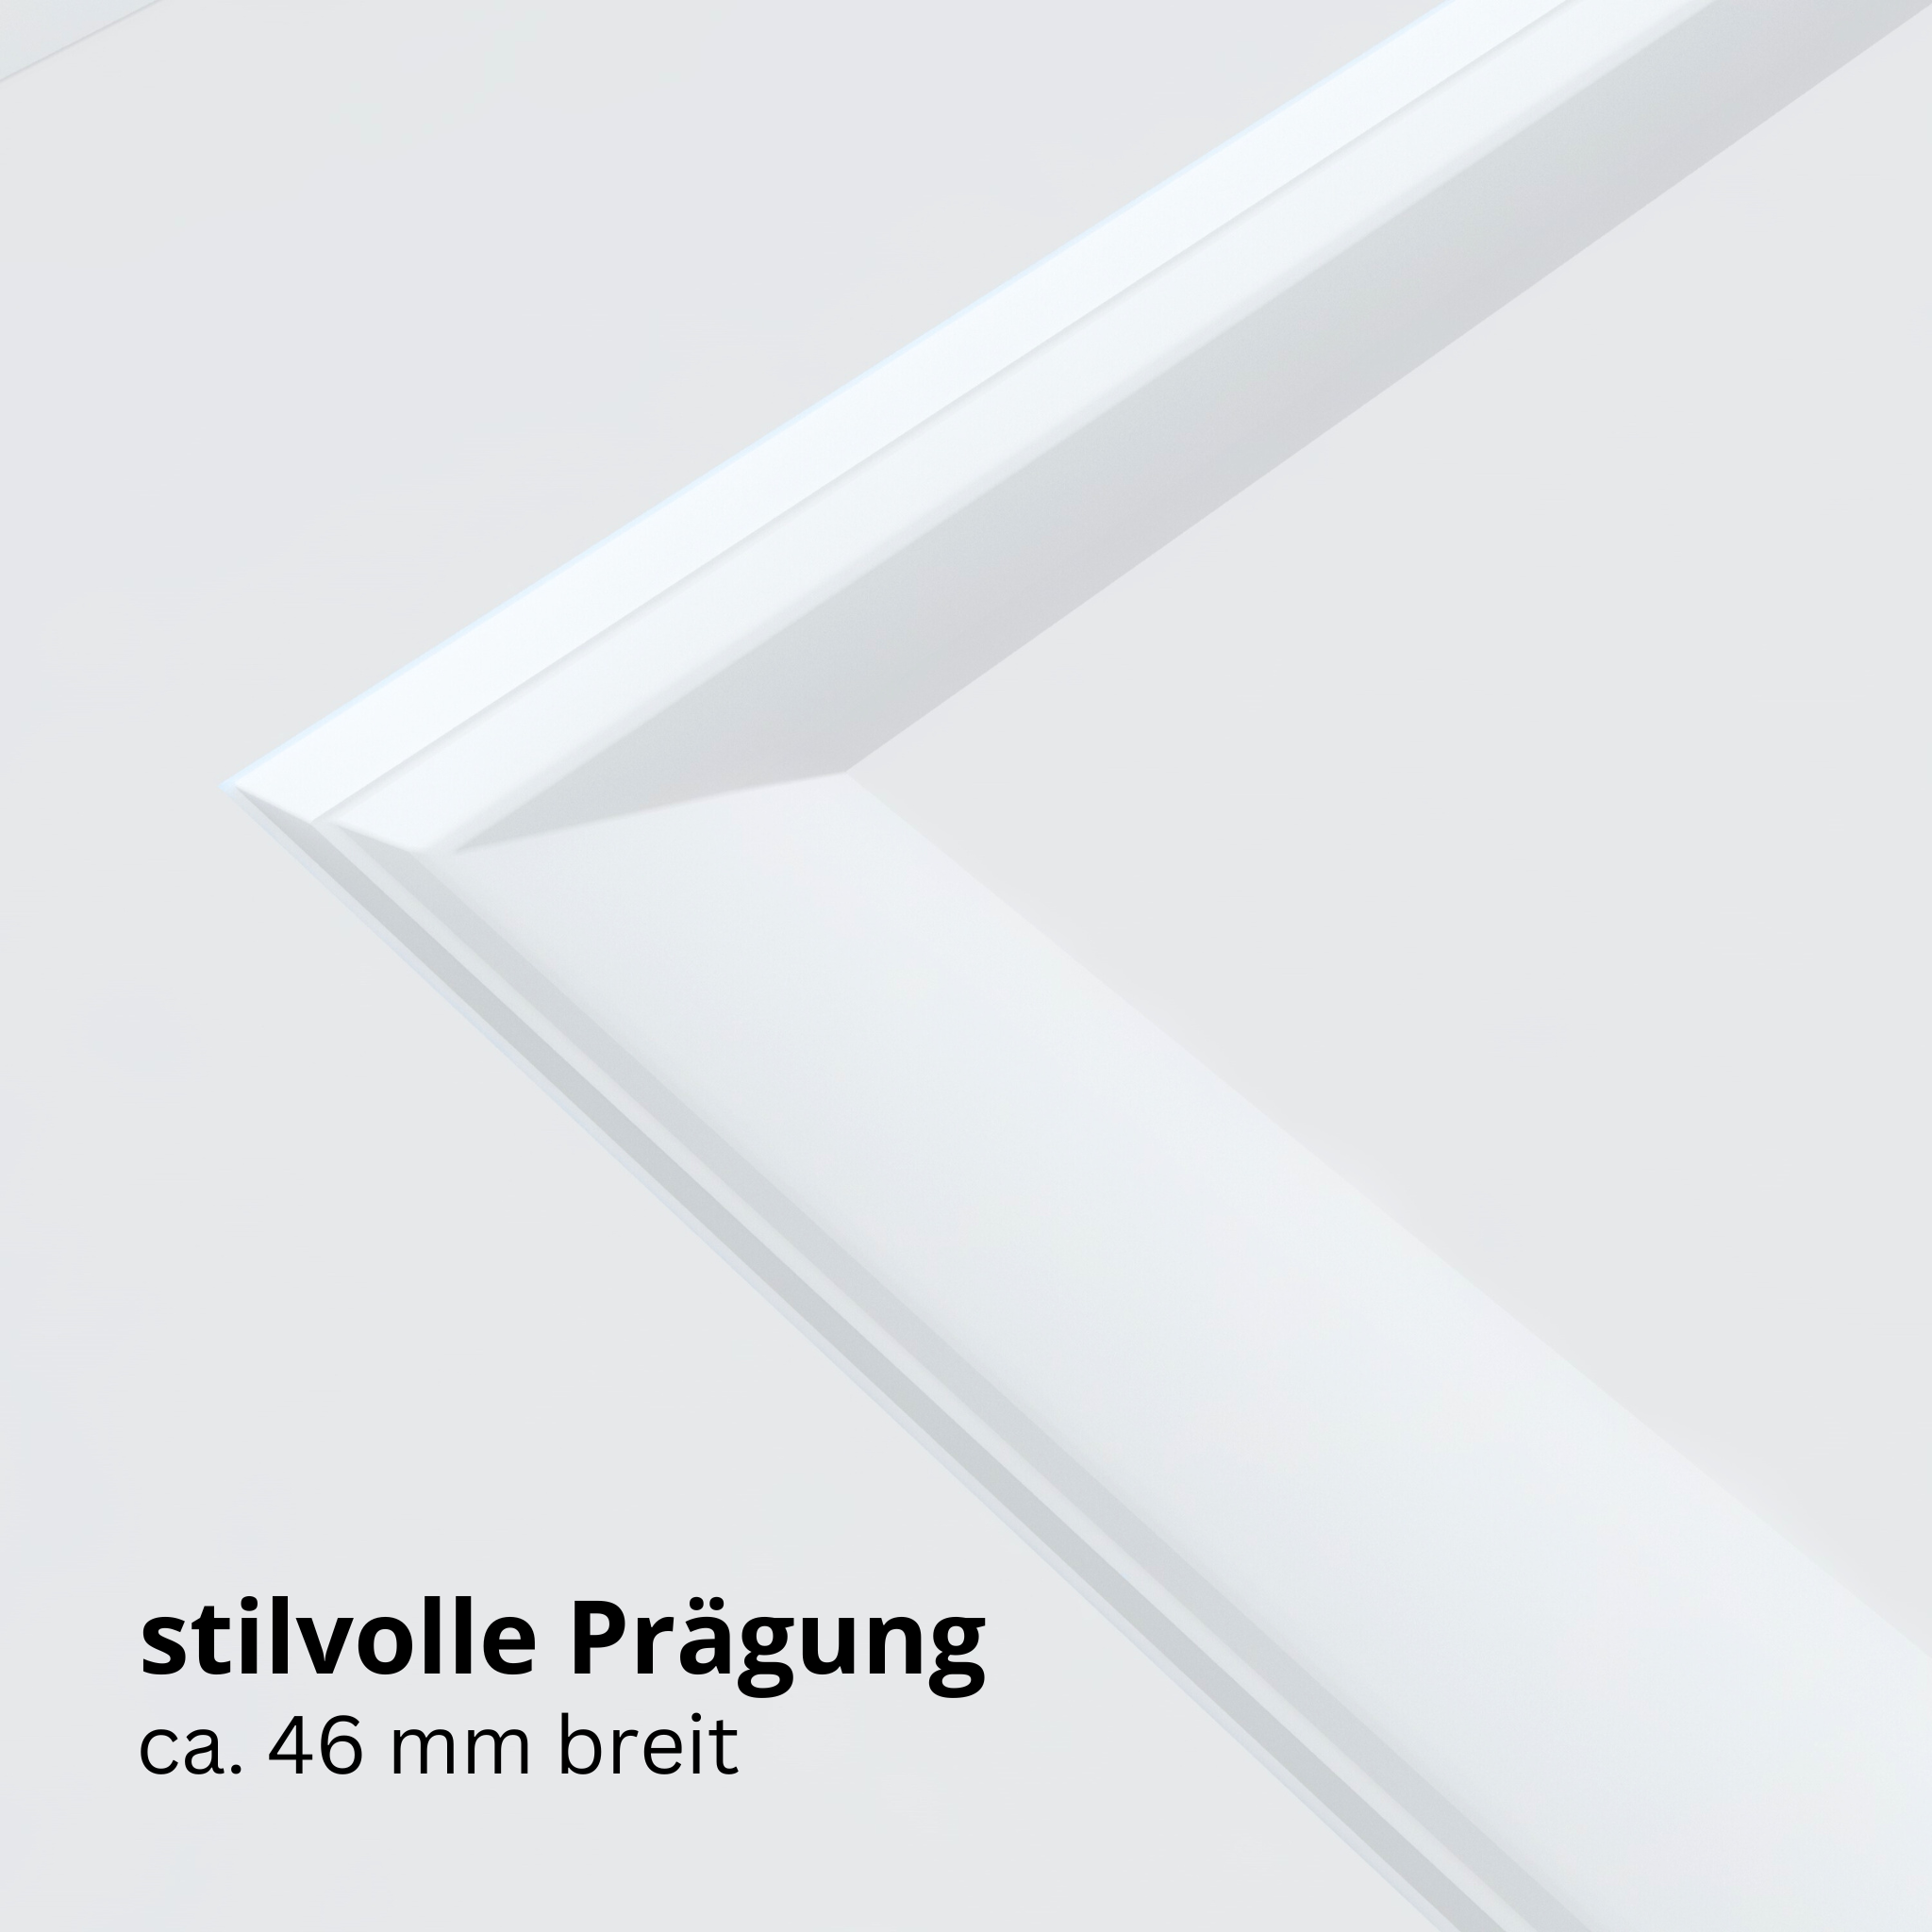 Wohnungseingangstür brillant-weiß 4 Kassetten Designkante SK2 / KK3 - Modell Stiltür K43